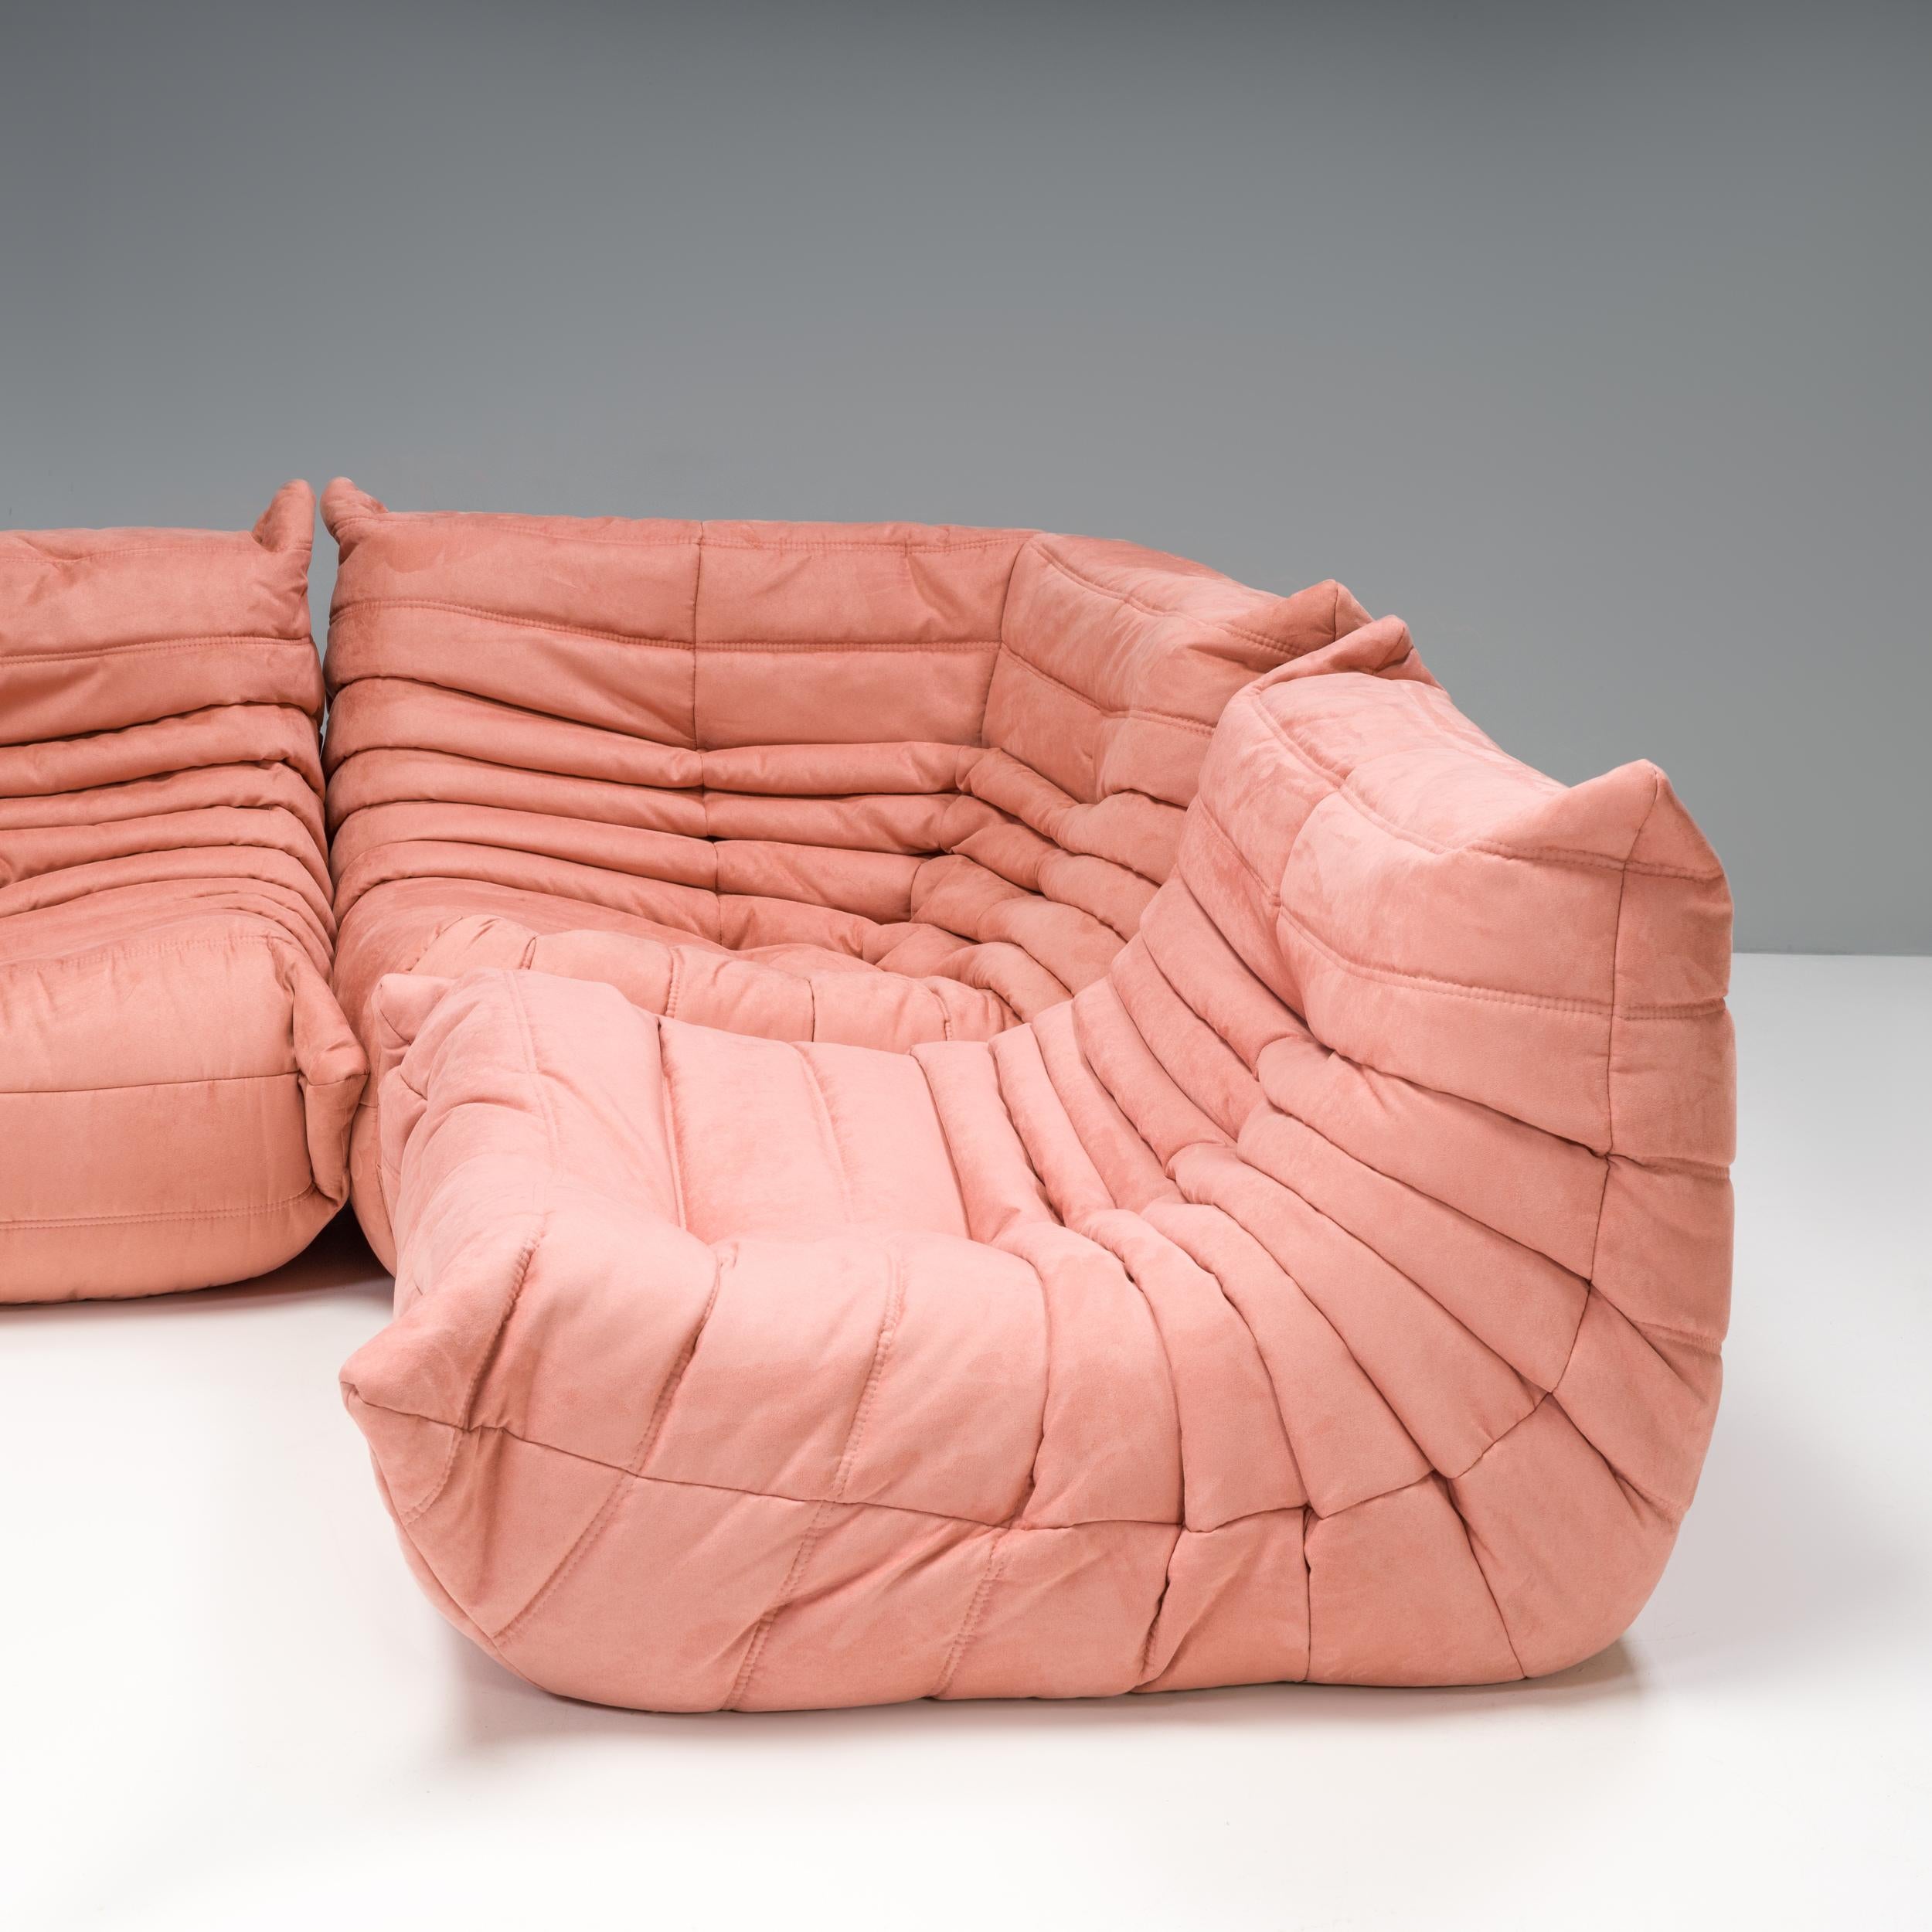 Das ikonische Sofa Togo, ursprünglich von Michel Ducaroy für Ligne Roset im Jahr 1973 entworfen, ist zu einem Designklassiker geworden.

Dieses fünfteilige modulare Set ist unglaublich vielseitig und kann zu einem großen Ecksofa konfiguriert oder